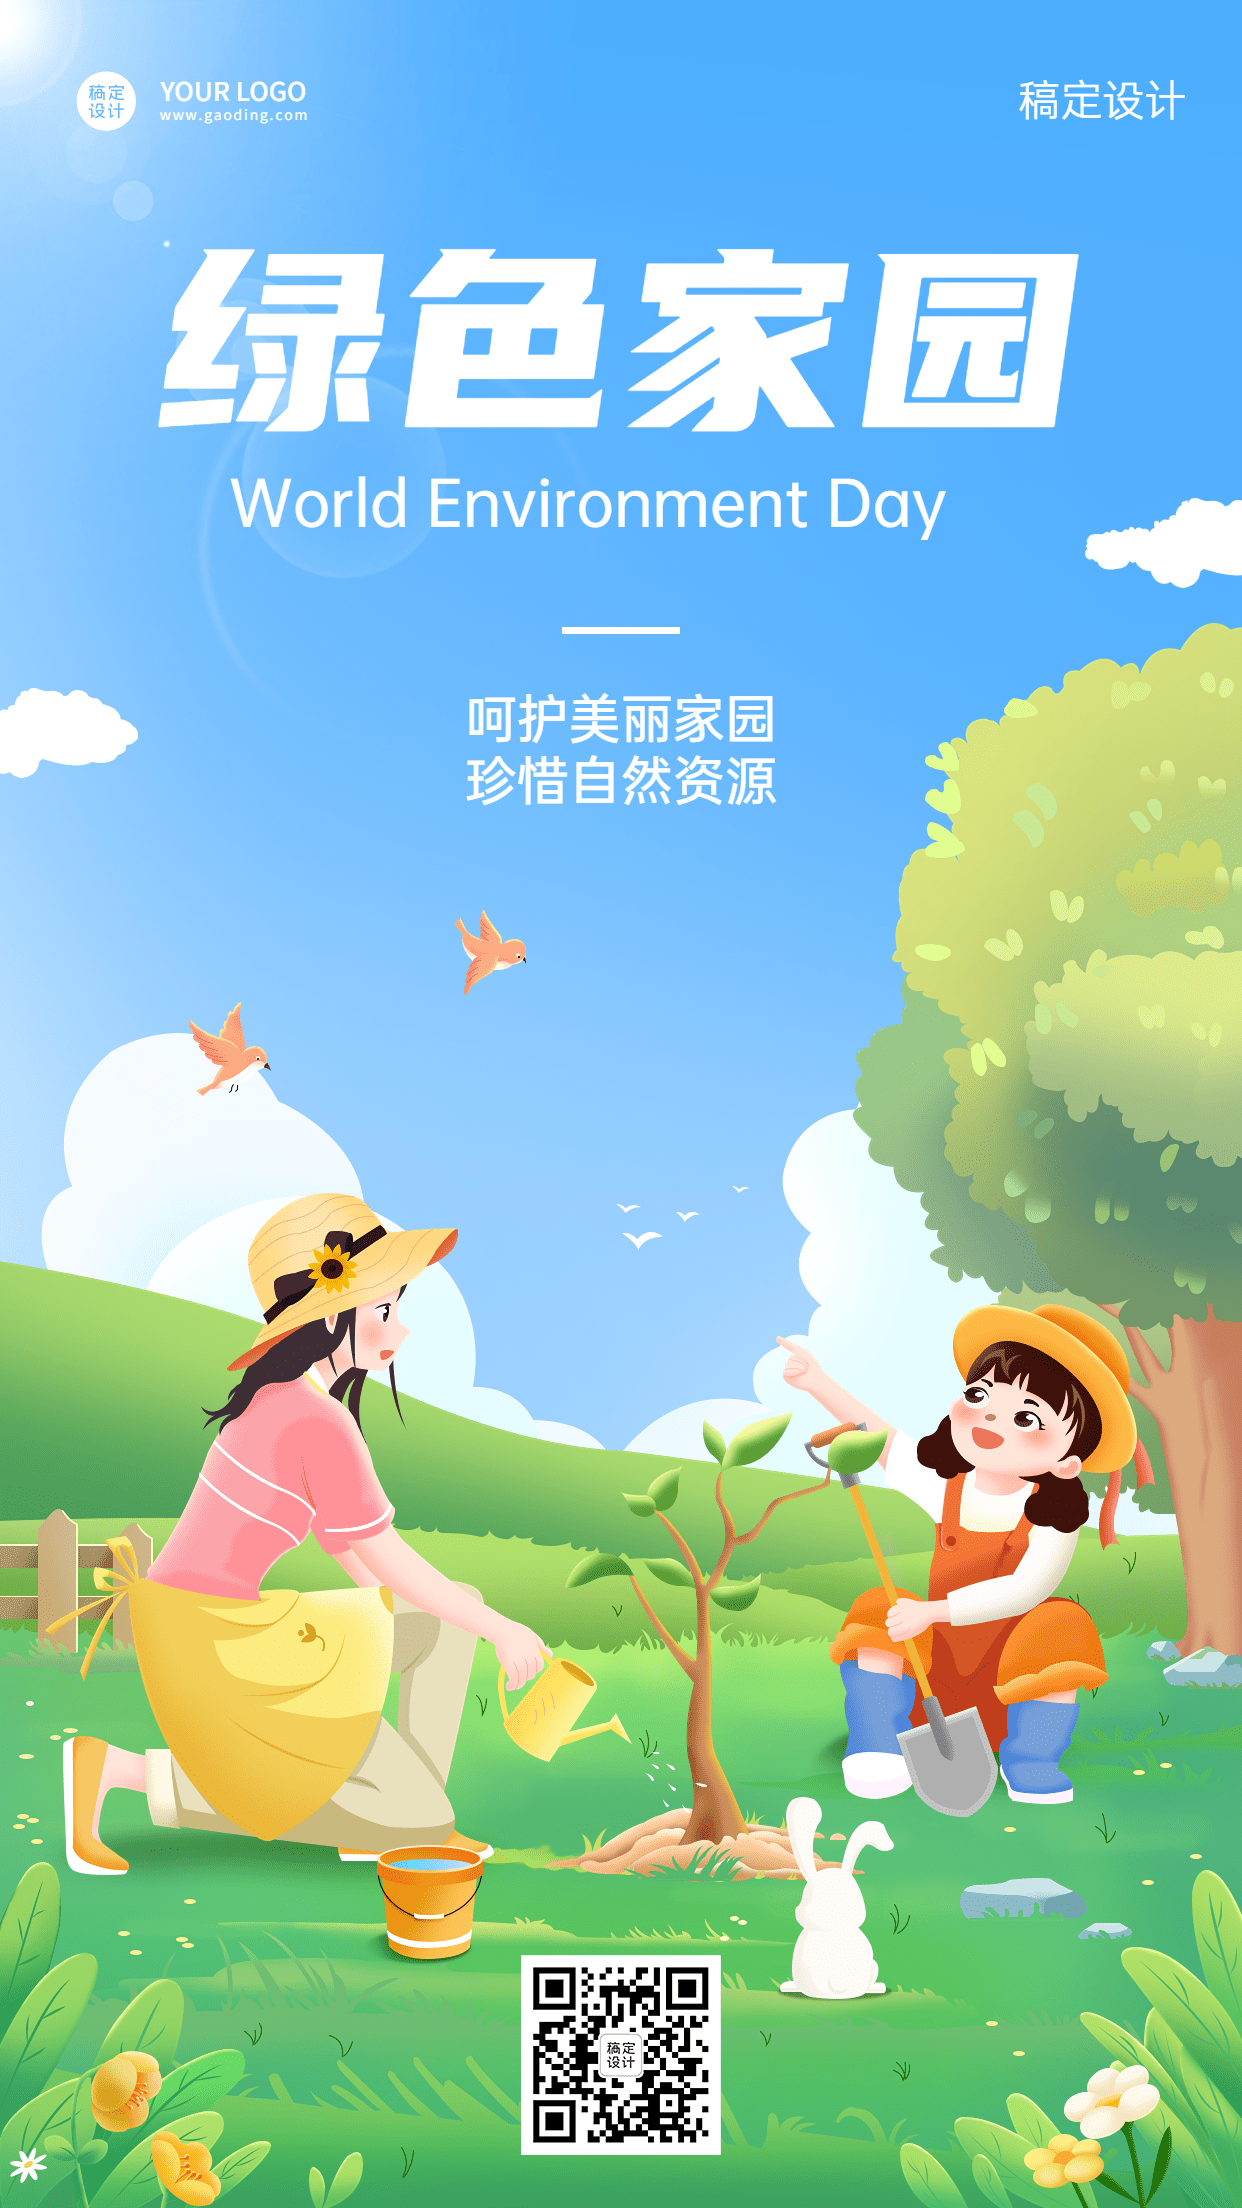 世界环境日节日宣传插画手机海报预览效果